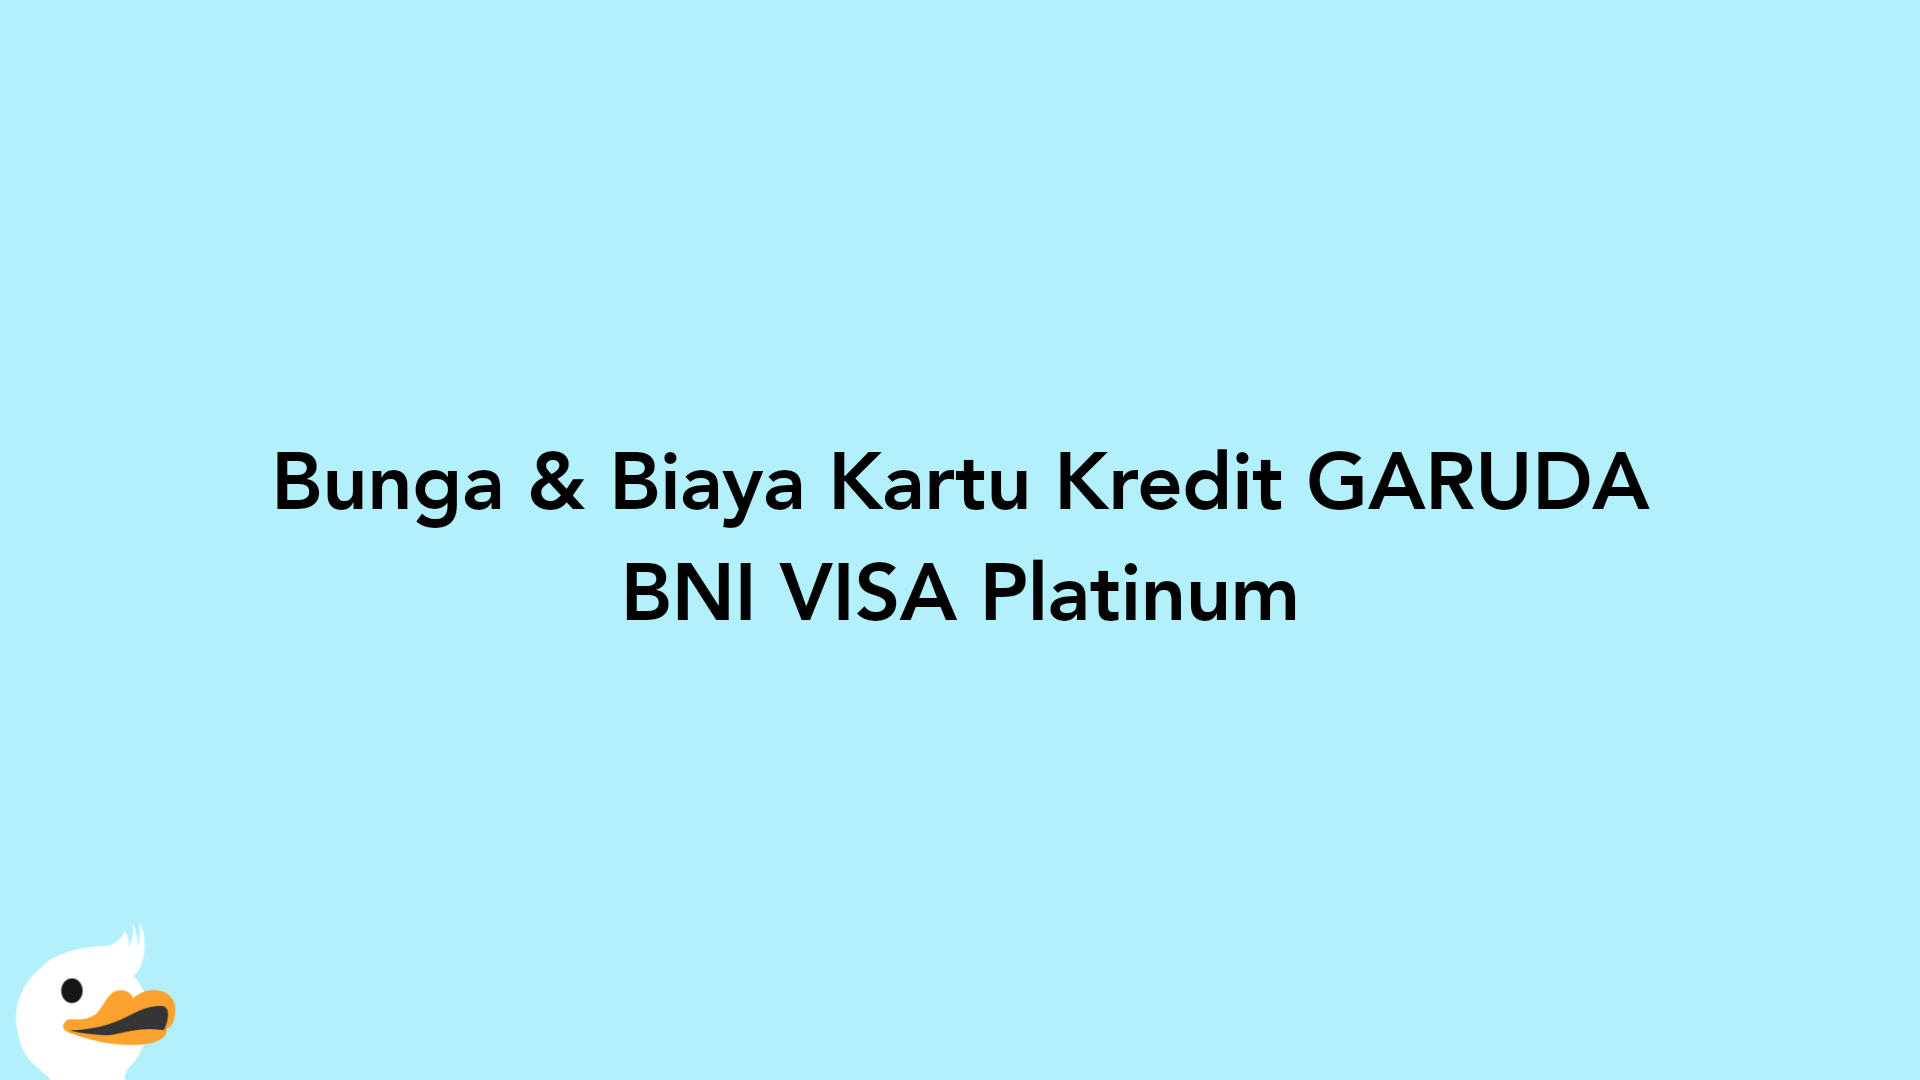 Bunga & Biaya Kartu Kredit GARUDA BNI VISA Platinum